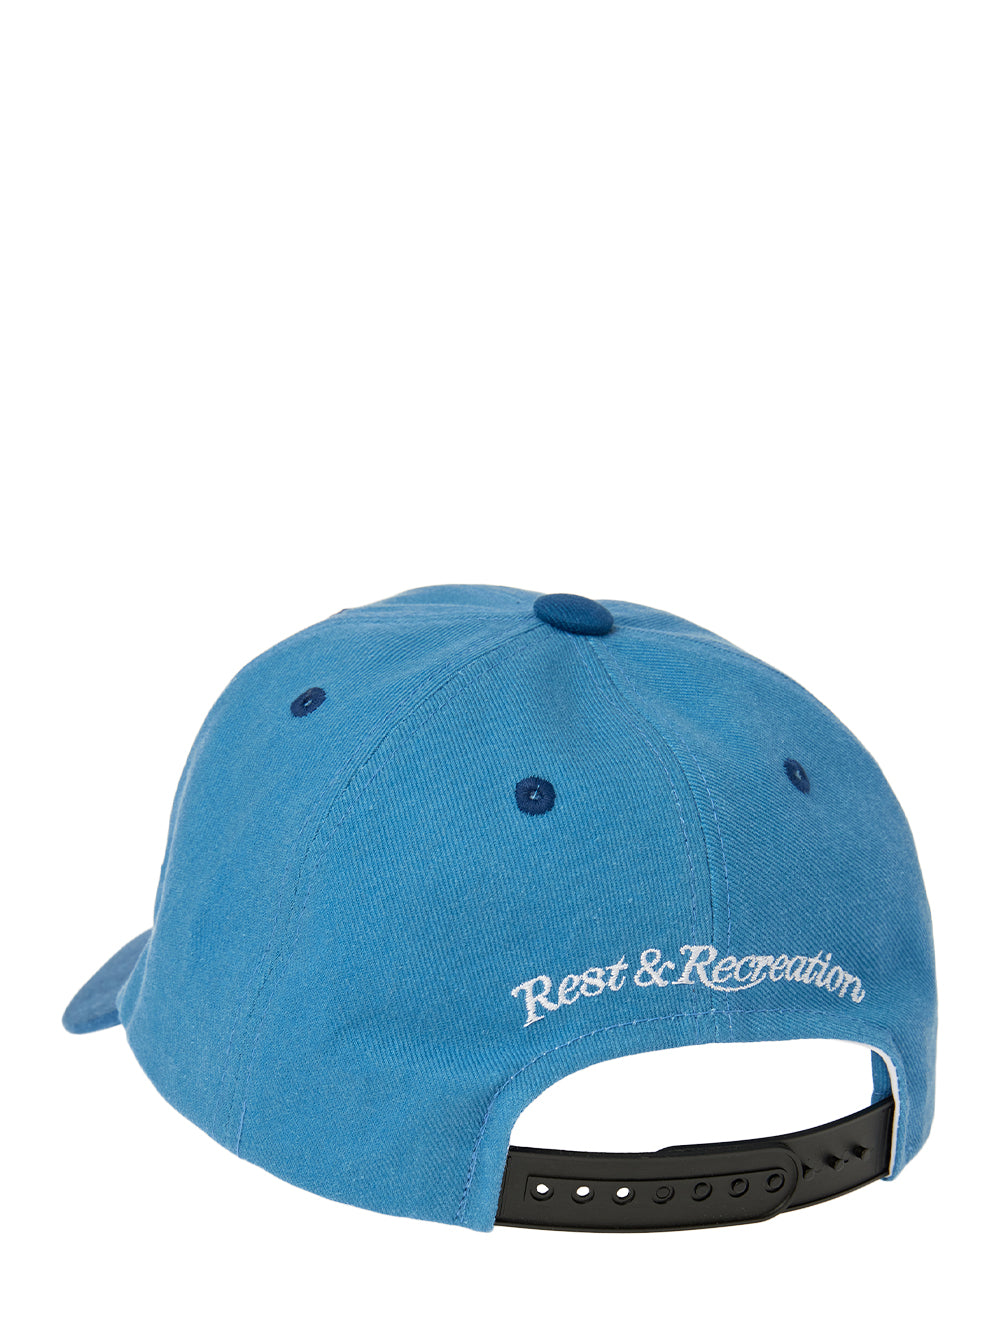 RR New Logo Patch Ball Cap (Blue)